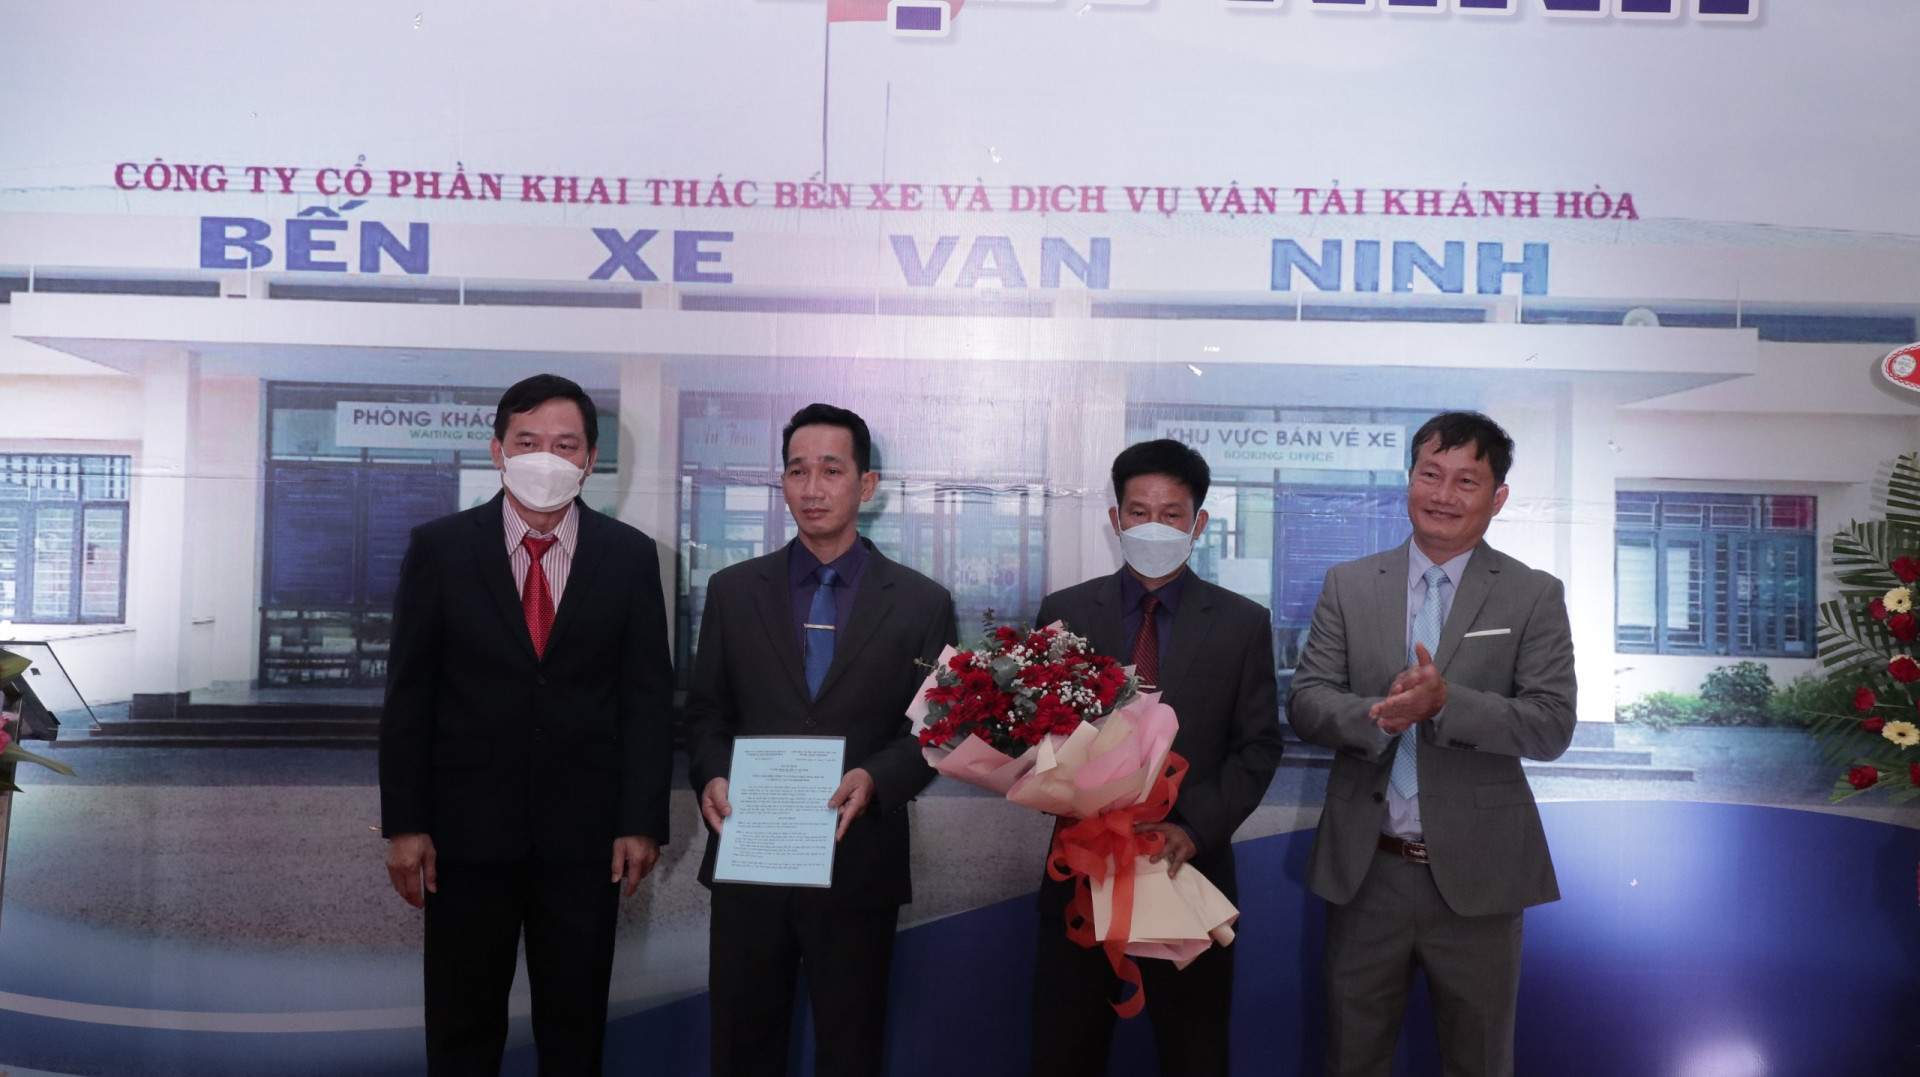 Công ty Cổ phần khai thác bến xe và dịch vụ vận tải Khánh Hòa trao quyết định thành lập Bến xe khách Vạn Ninh.